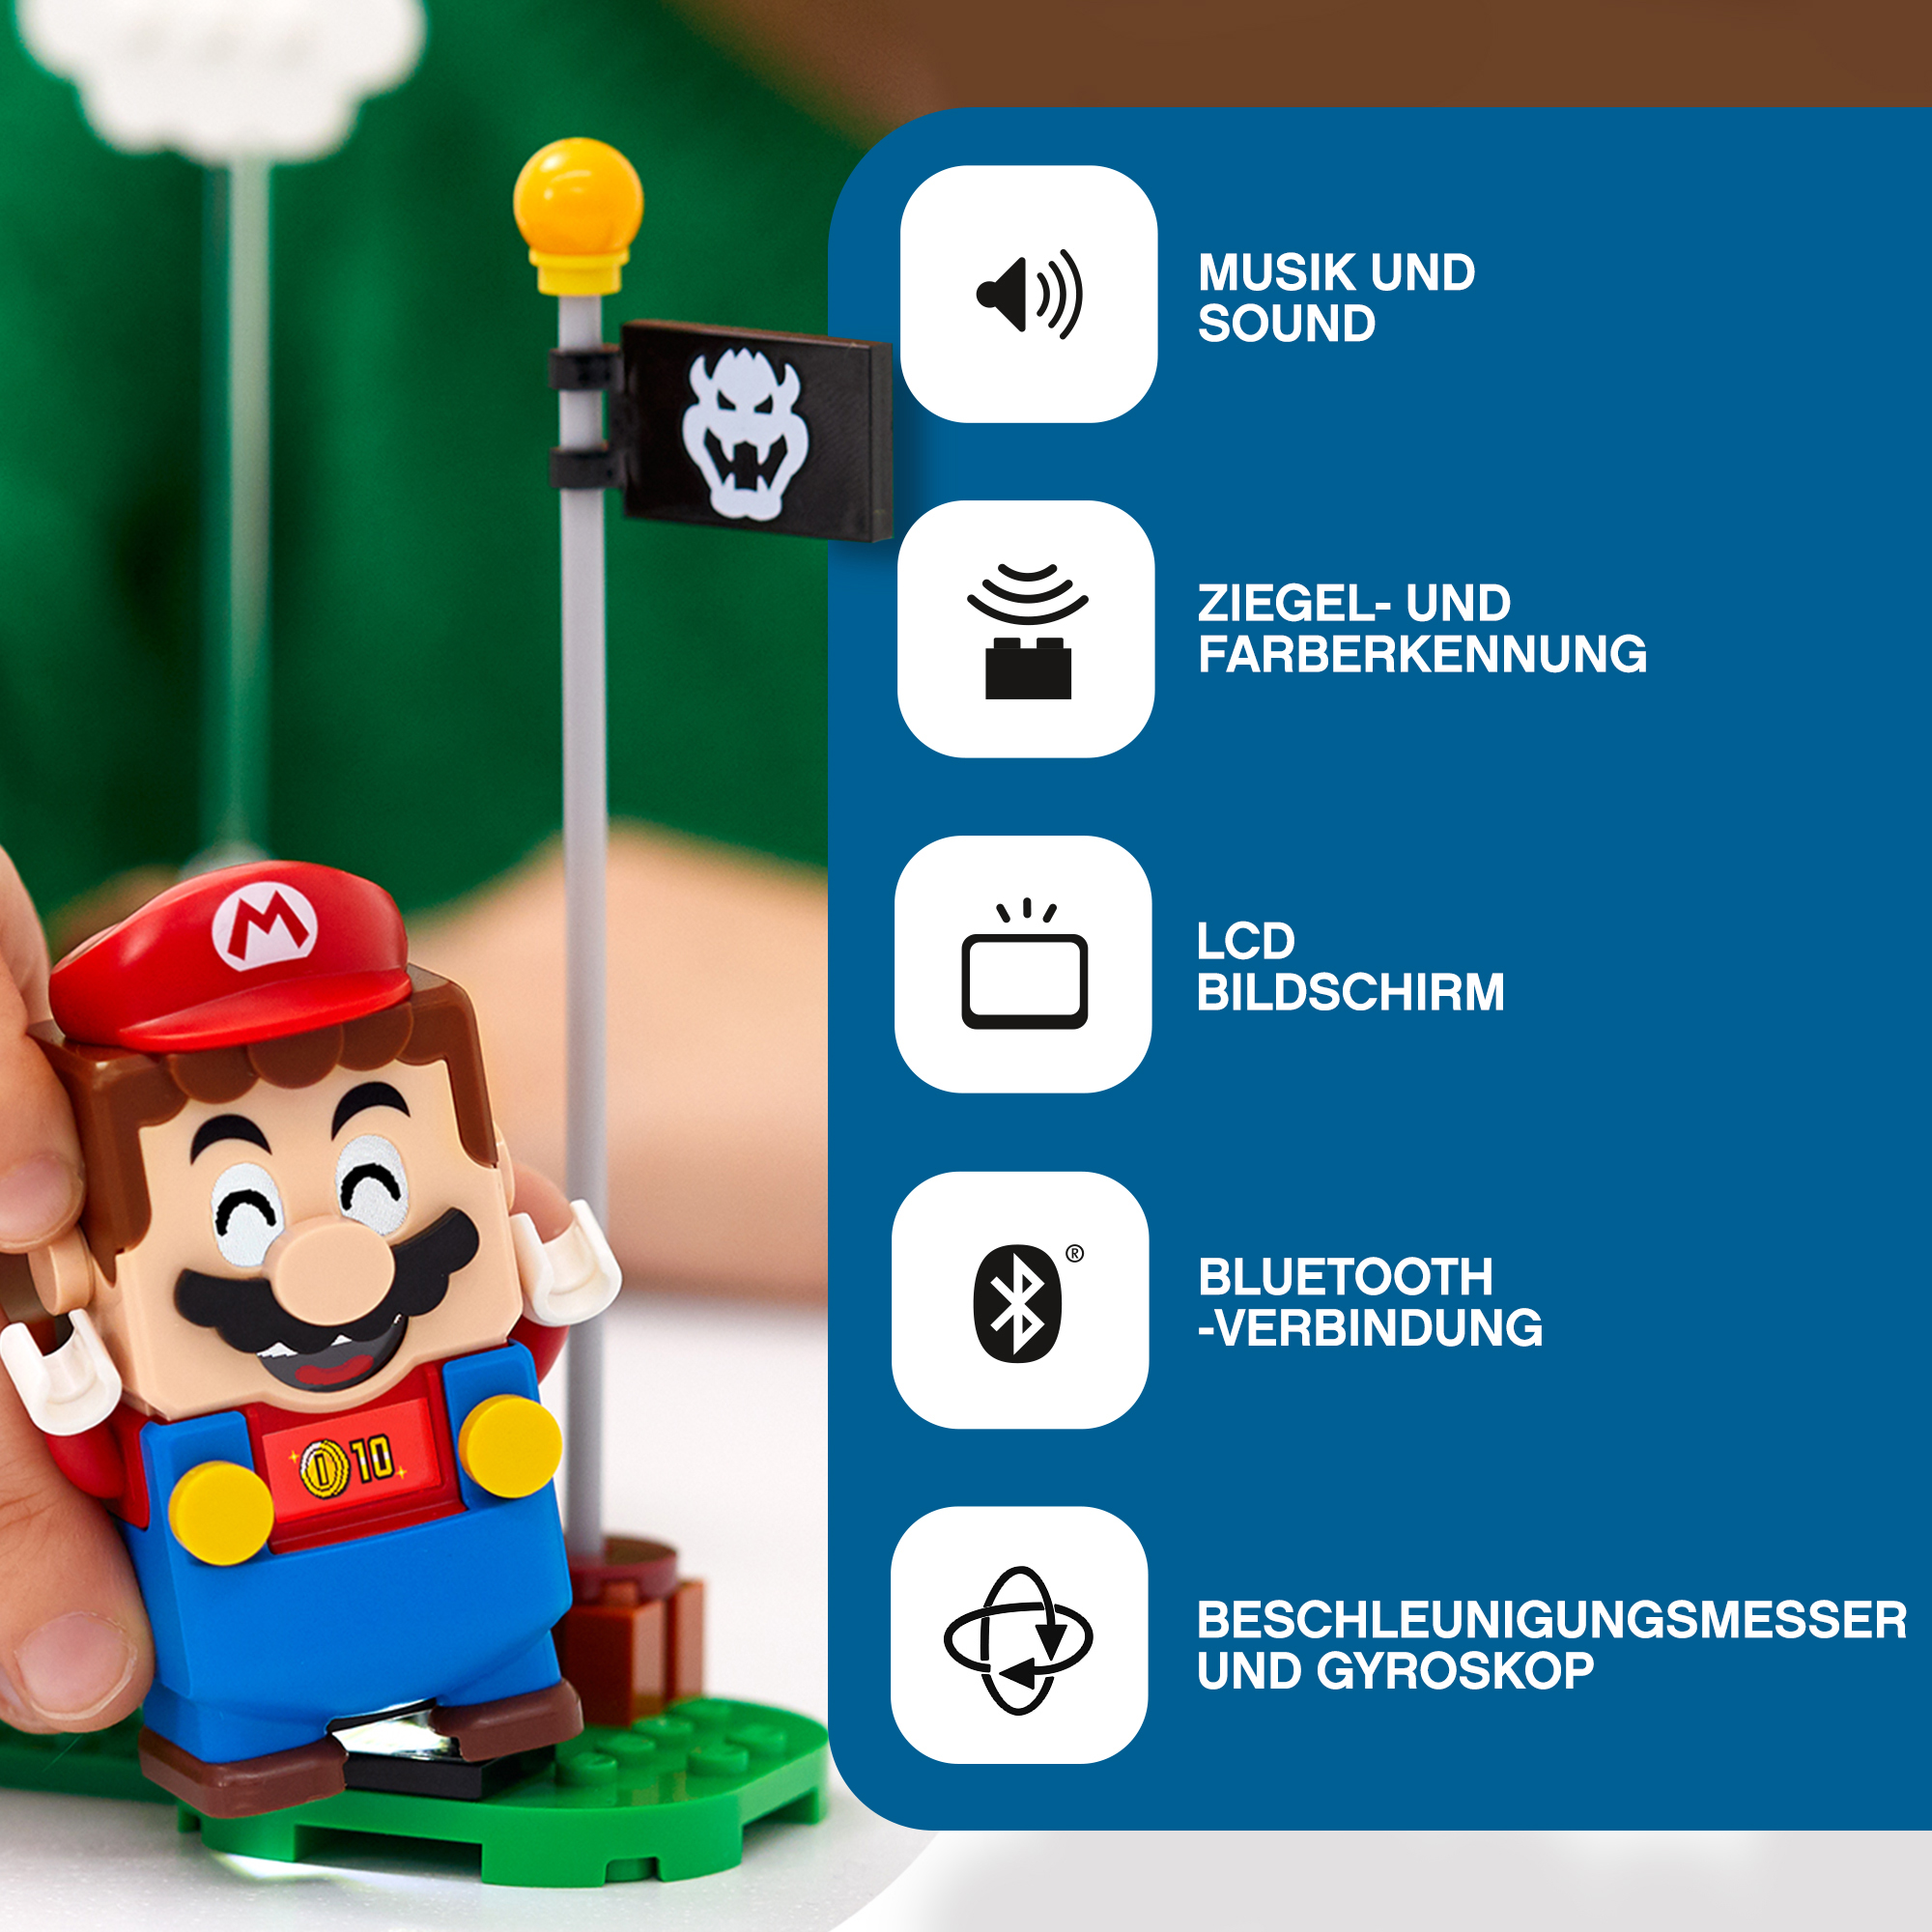 71360 LEGO Starterset – mit Abenteuer Bausatz, Mario™ Mehrfarbig